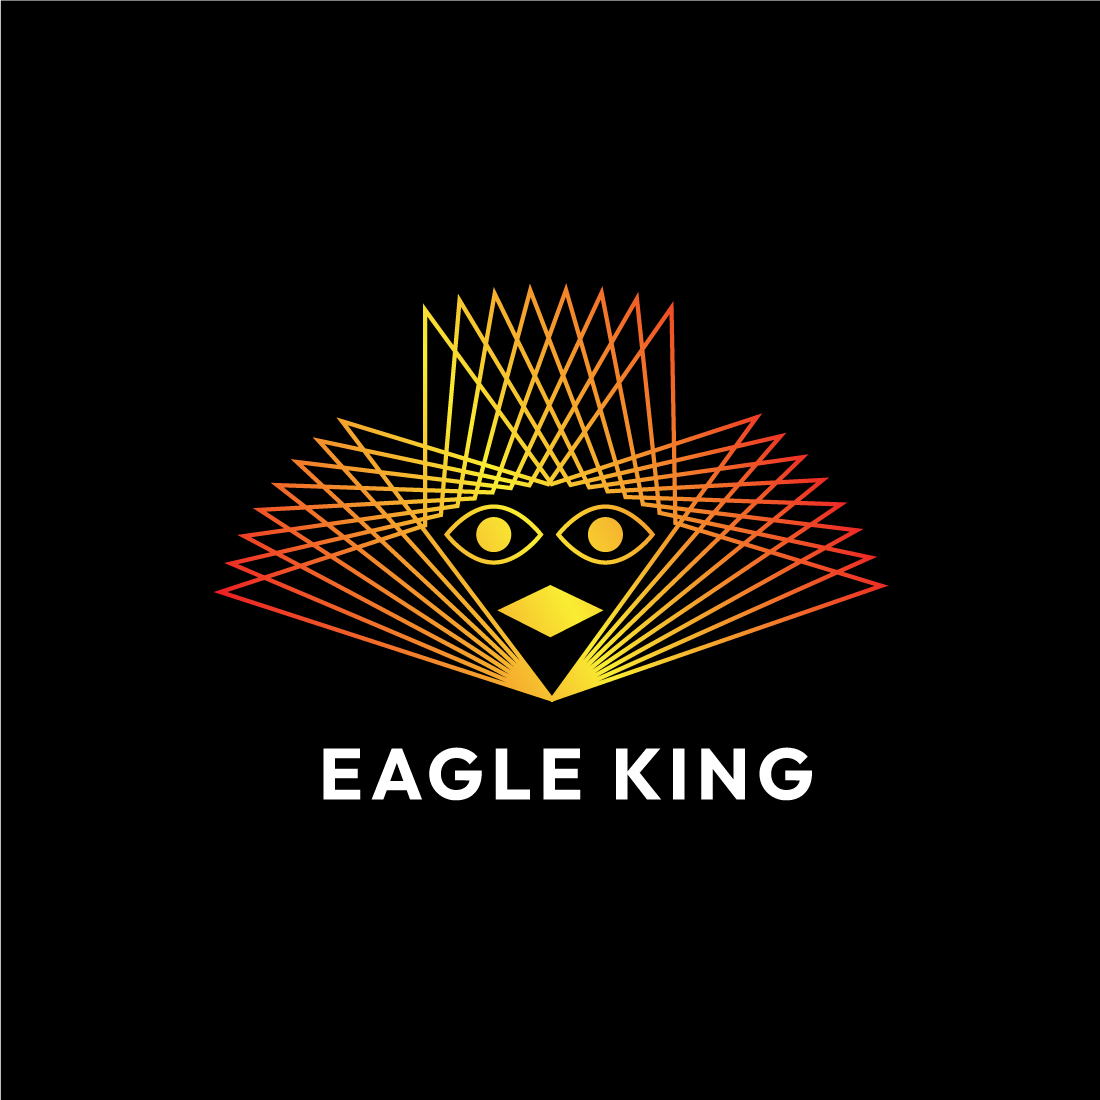 Regal Eagle King Line Art Logo Design - Majestic Emblem for Your Brand cover image.